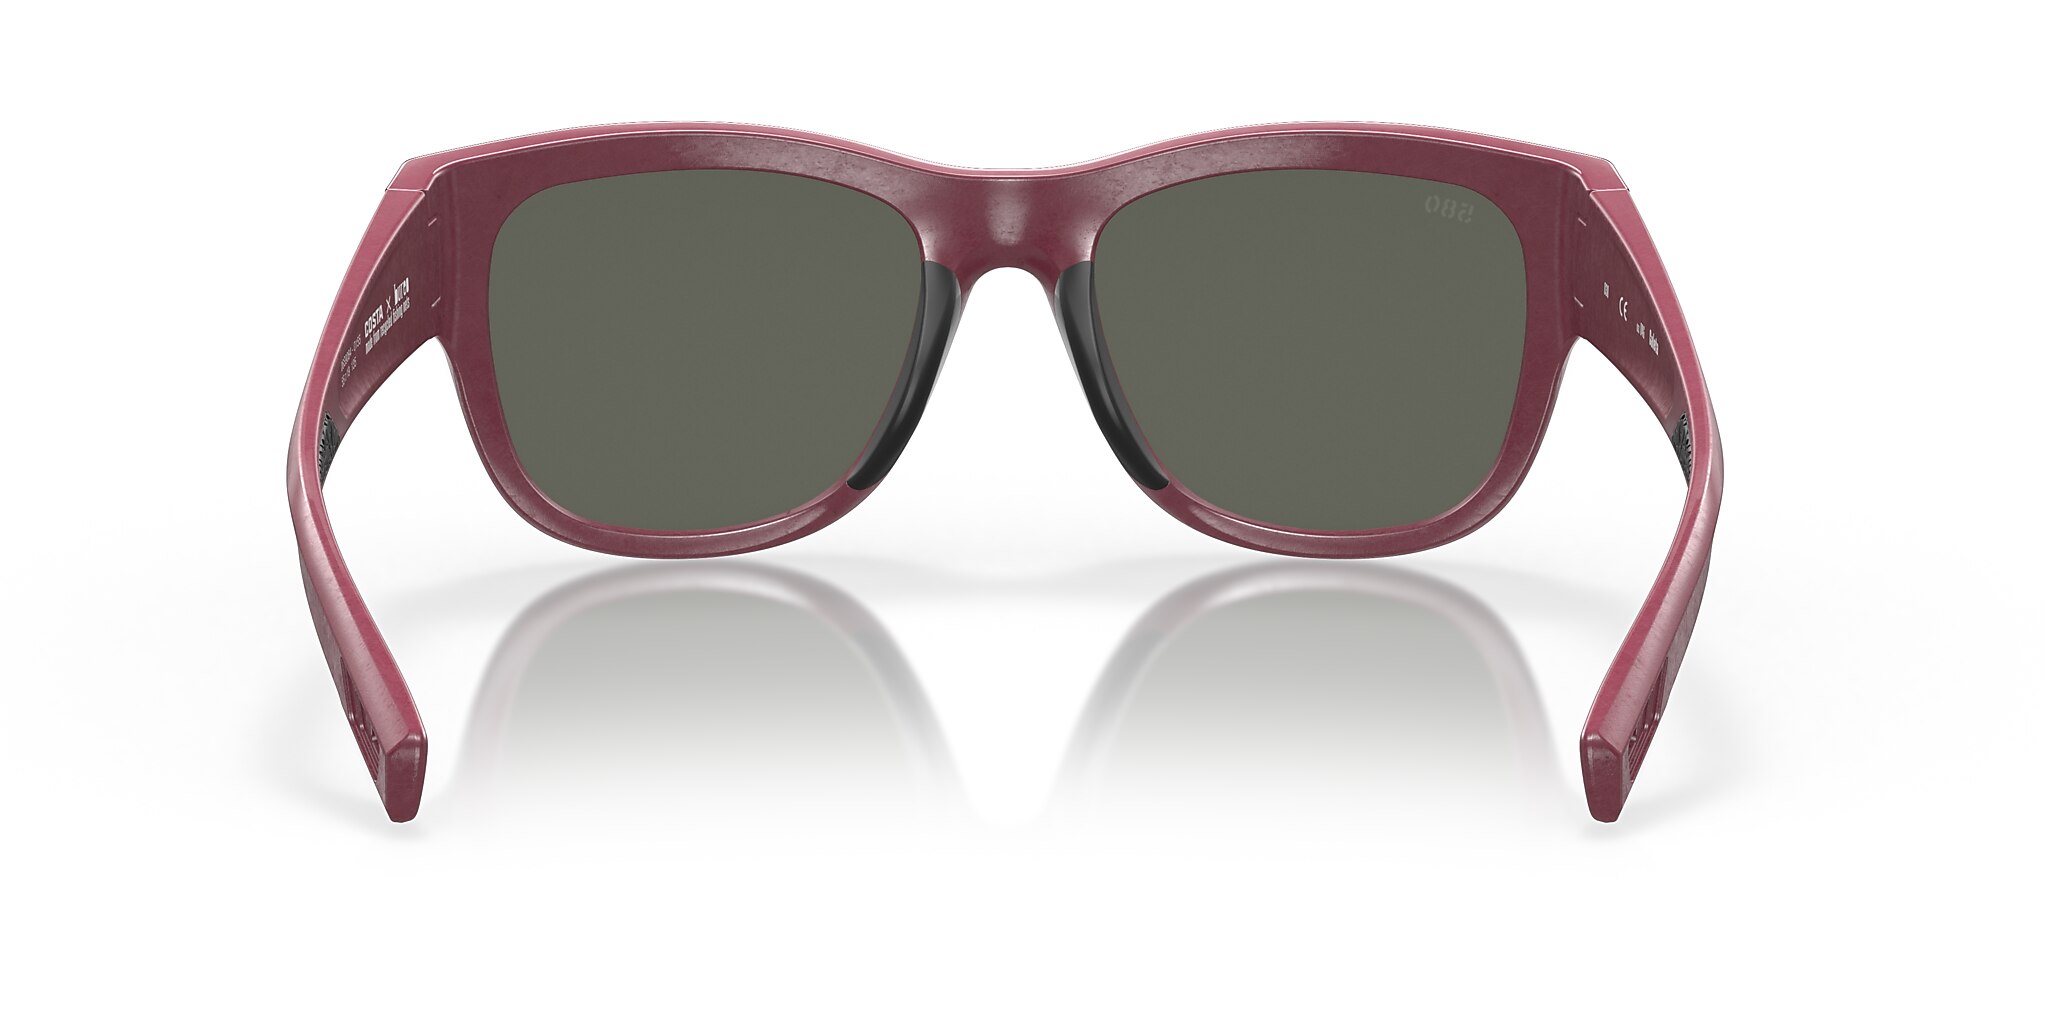 Caleta Polarized Sunglasses in Gray | Costa Del Mar®